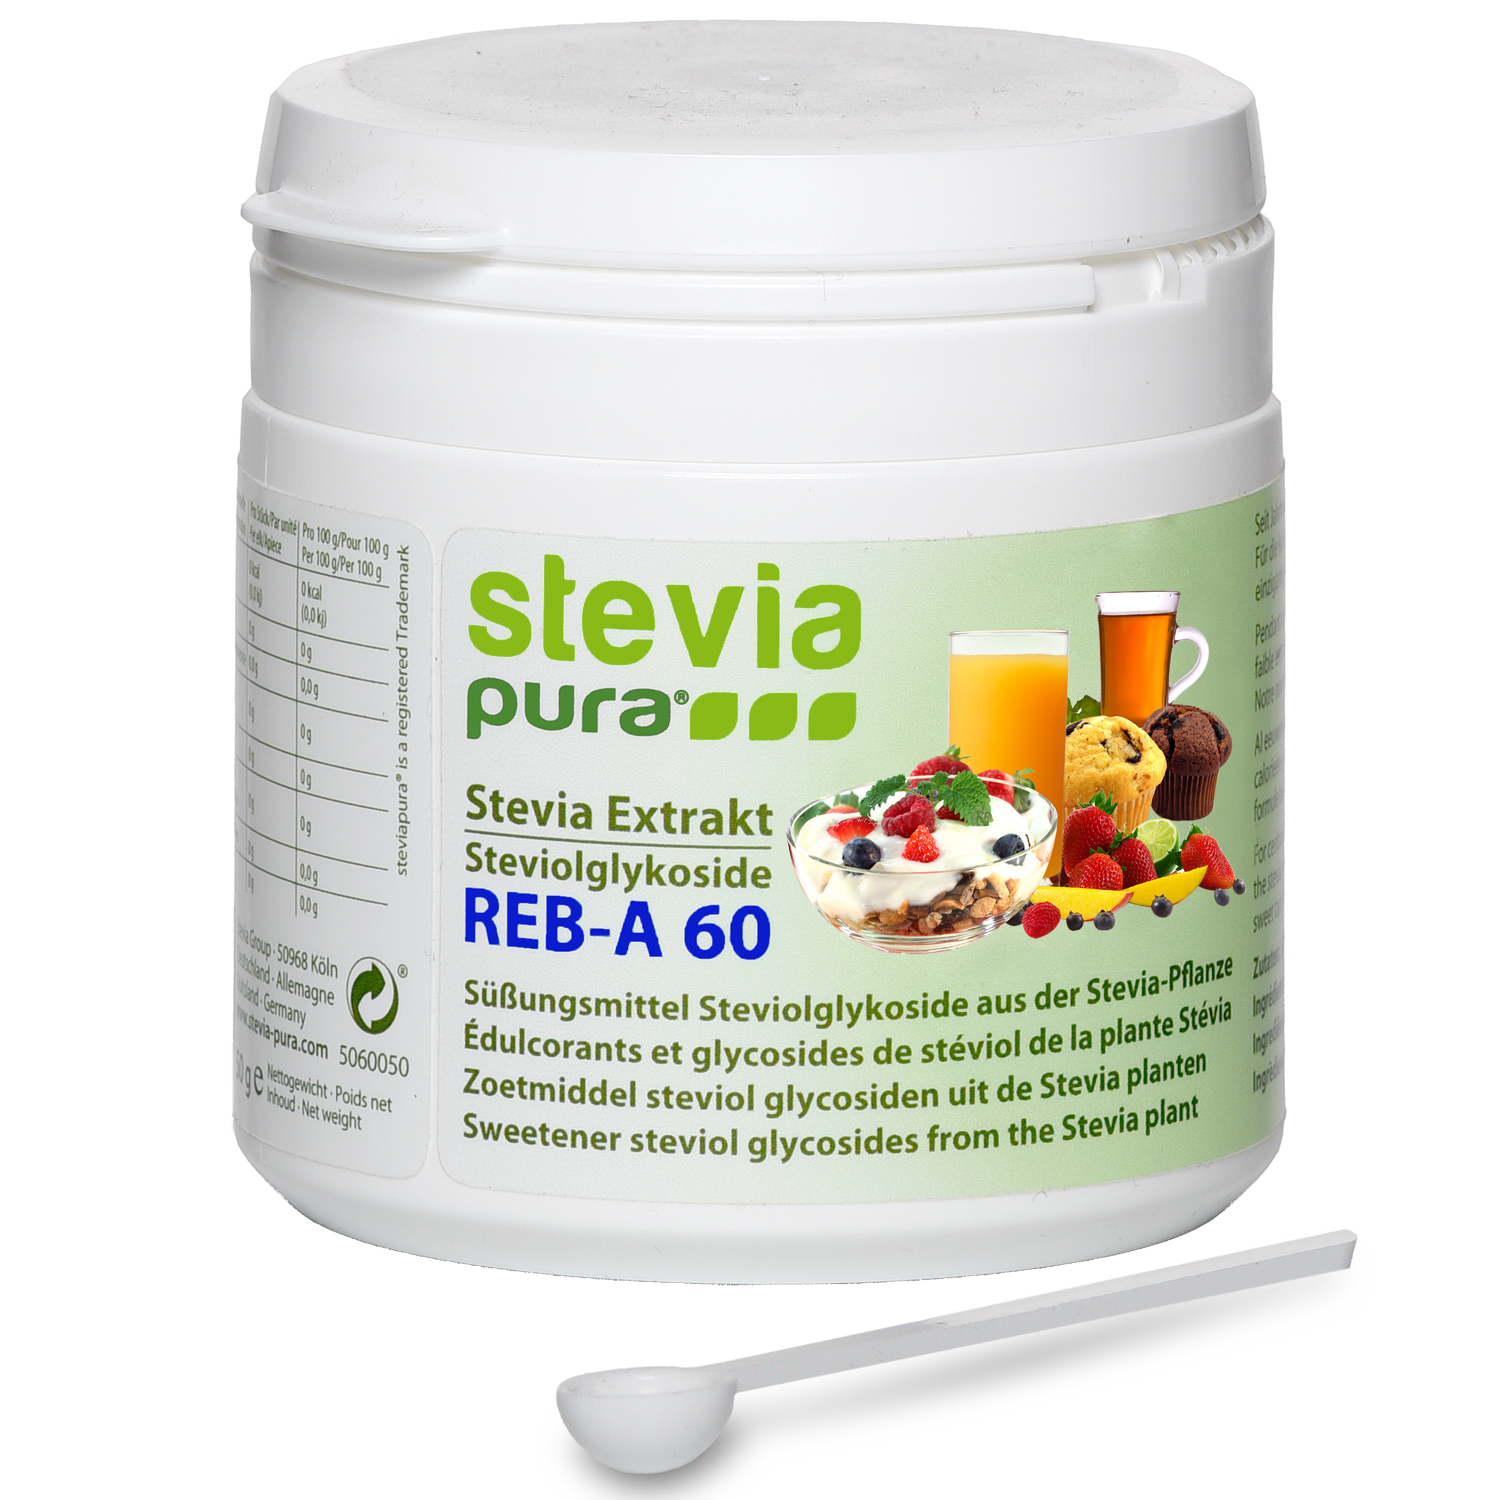 Comprar Extracto de Stevia en Polvo (Esteviósido) puro, blanco